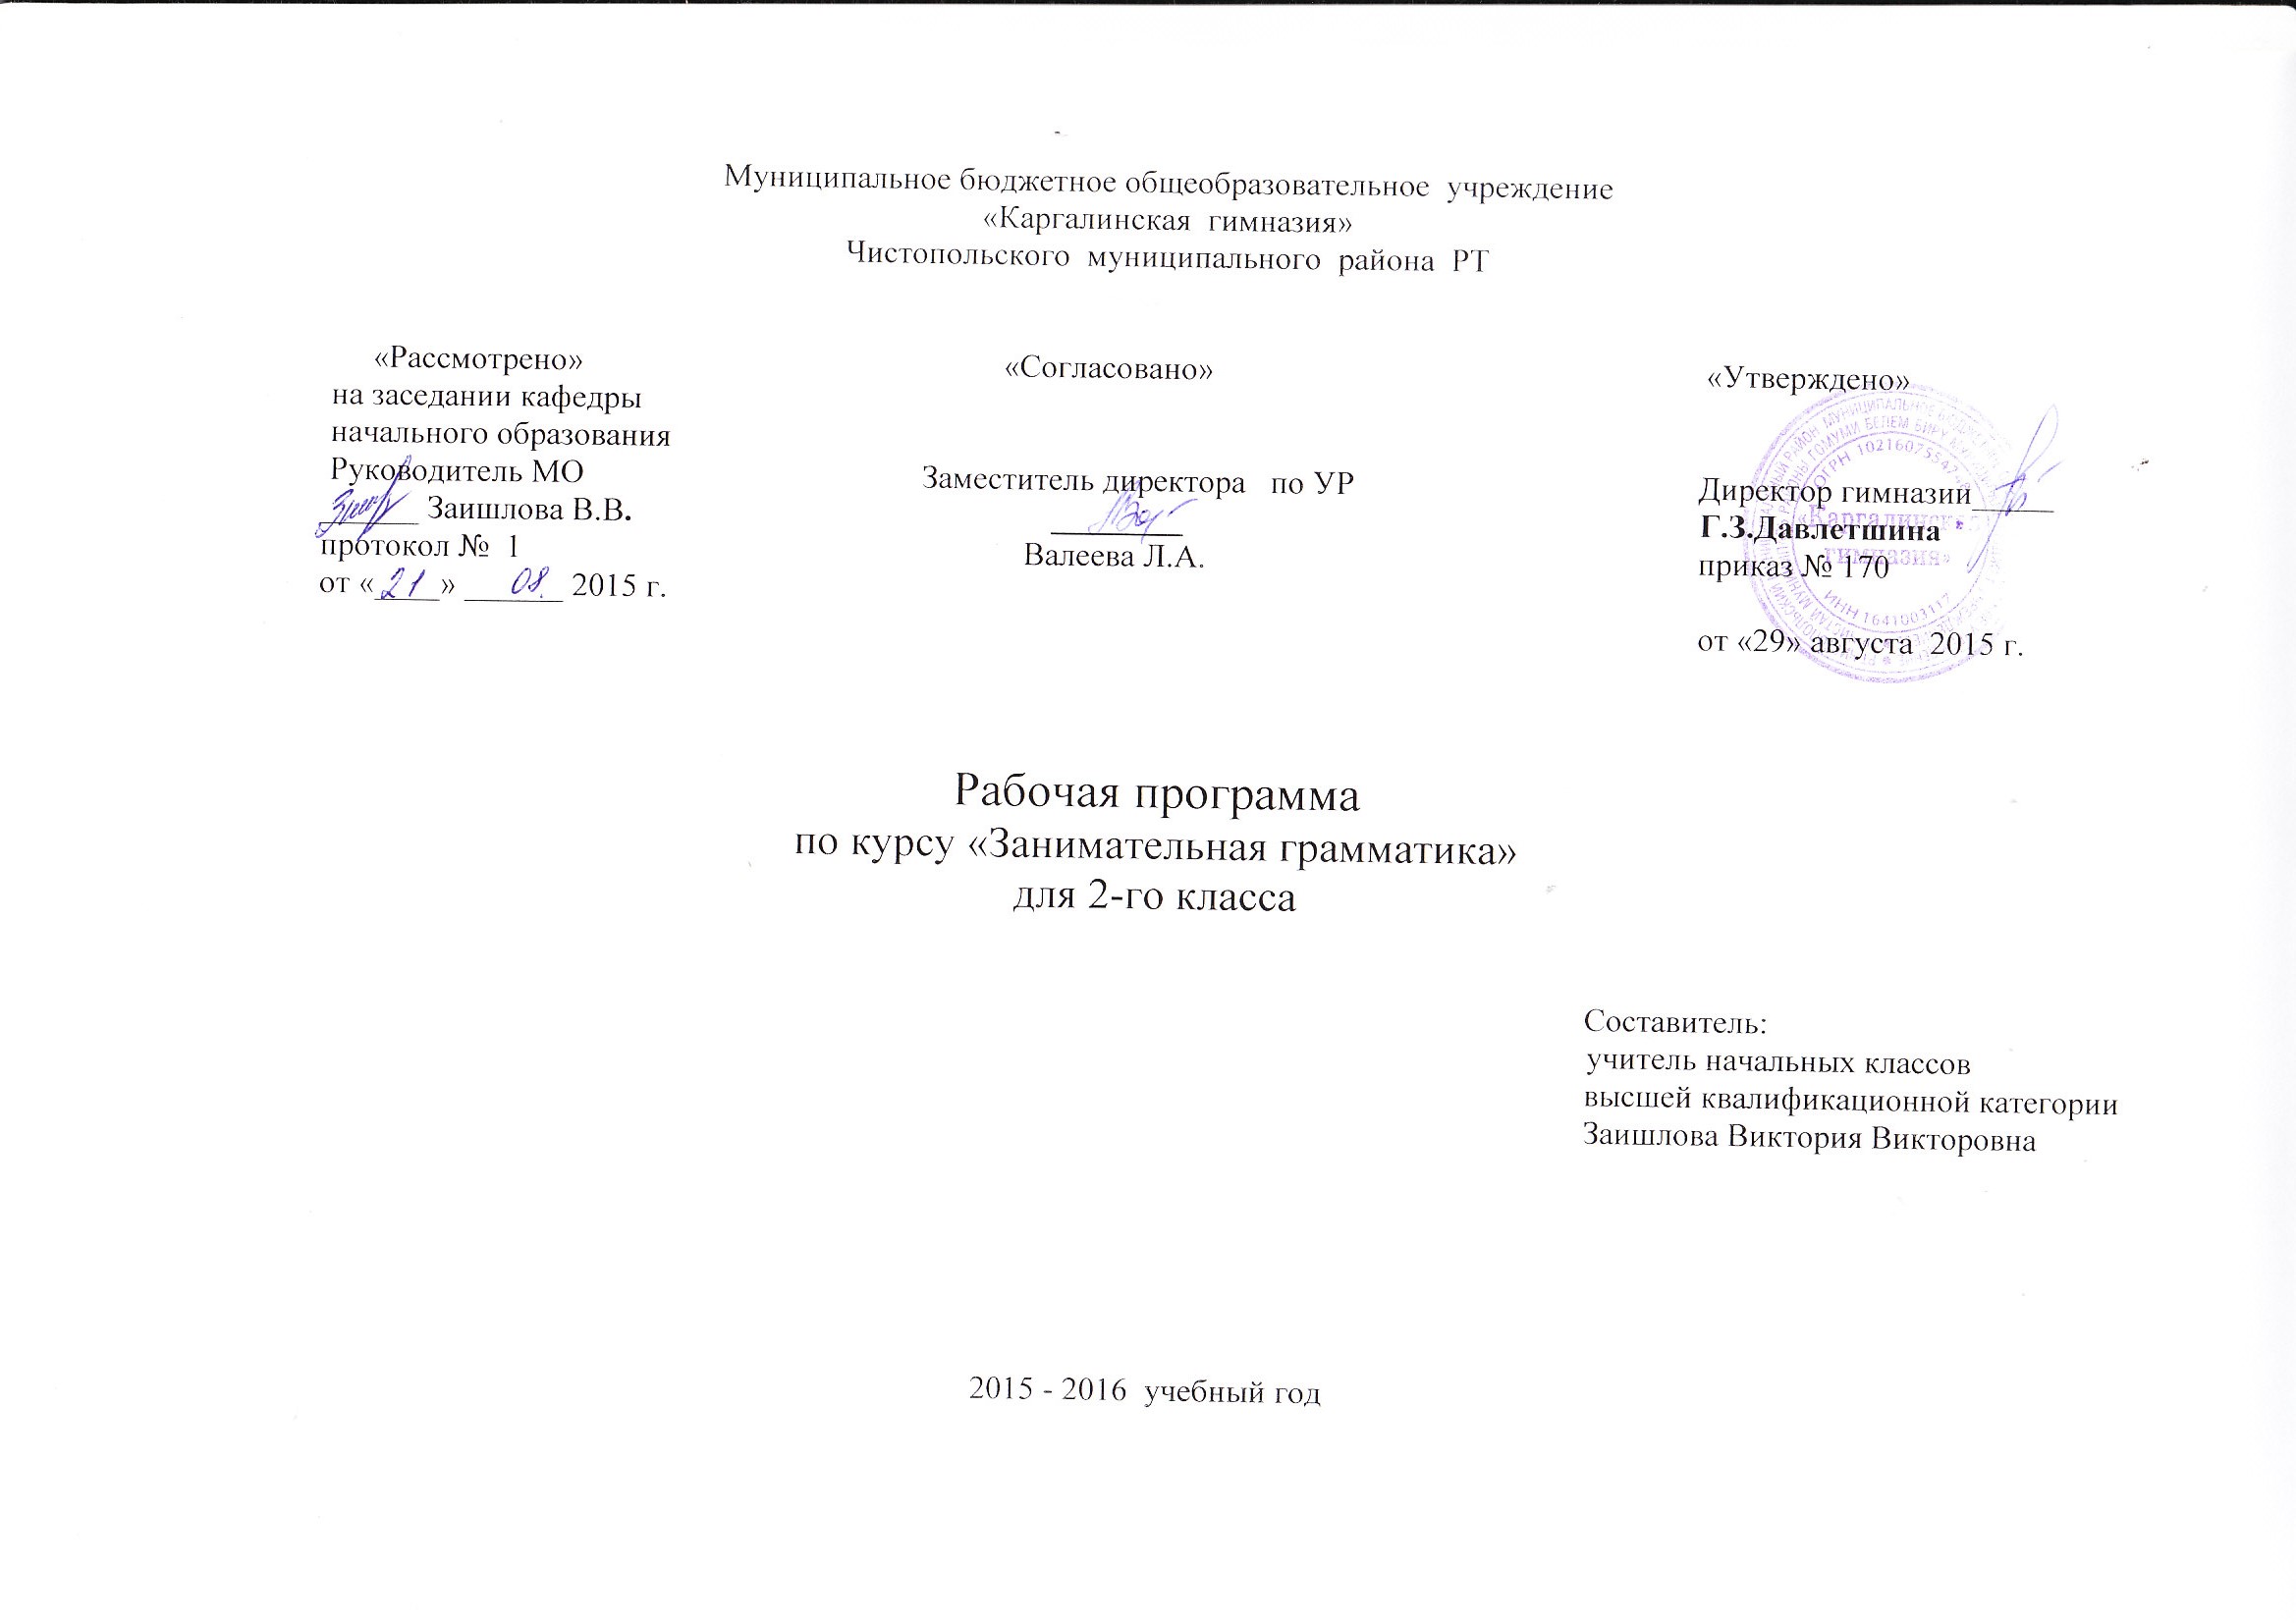 Спецкурс по русскому языку Занимательная грамматика (2 класс)